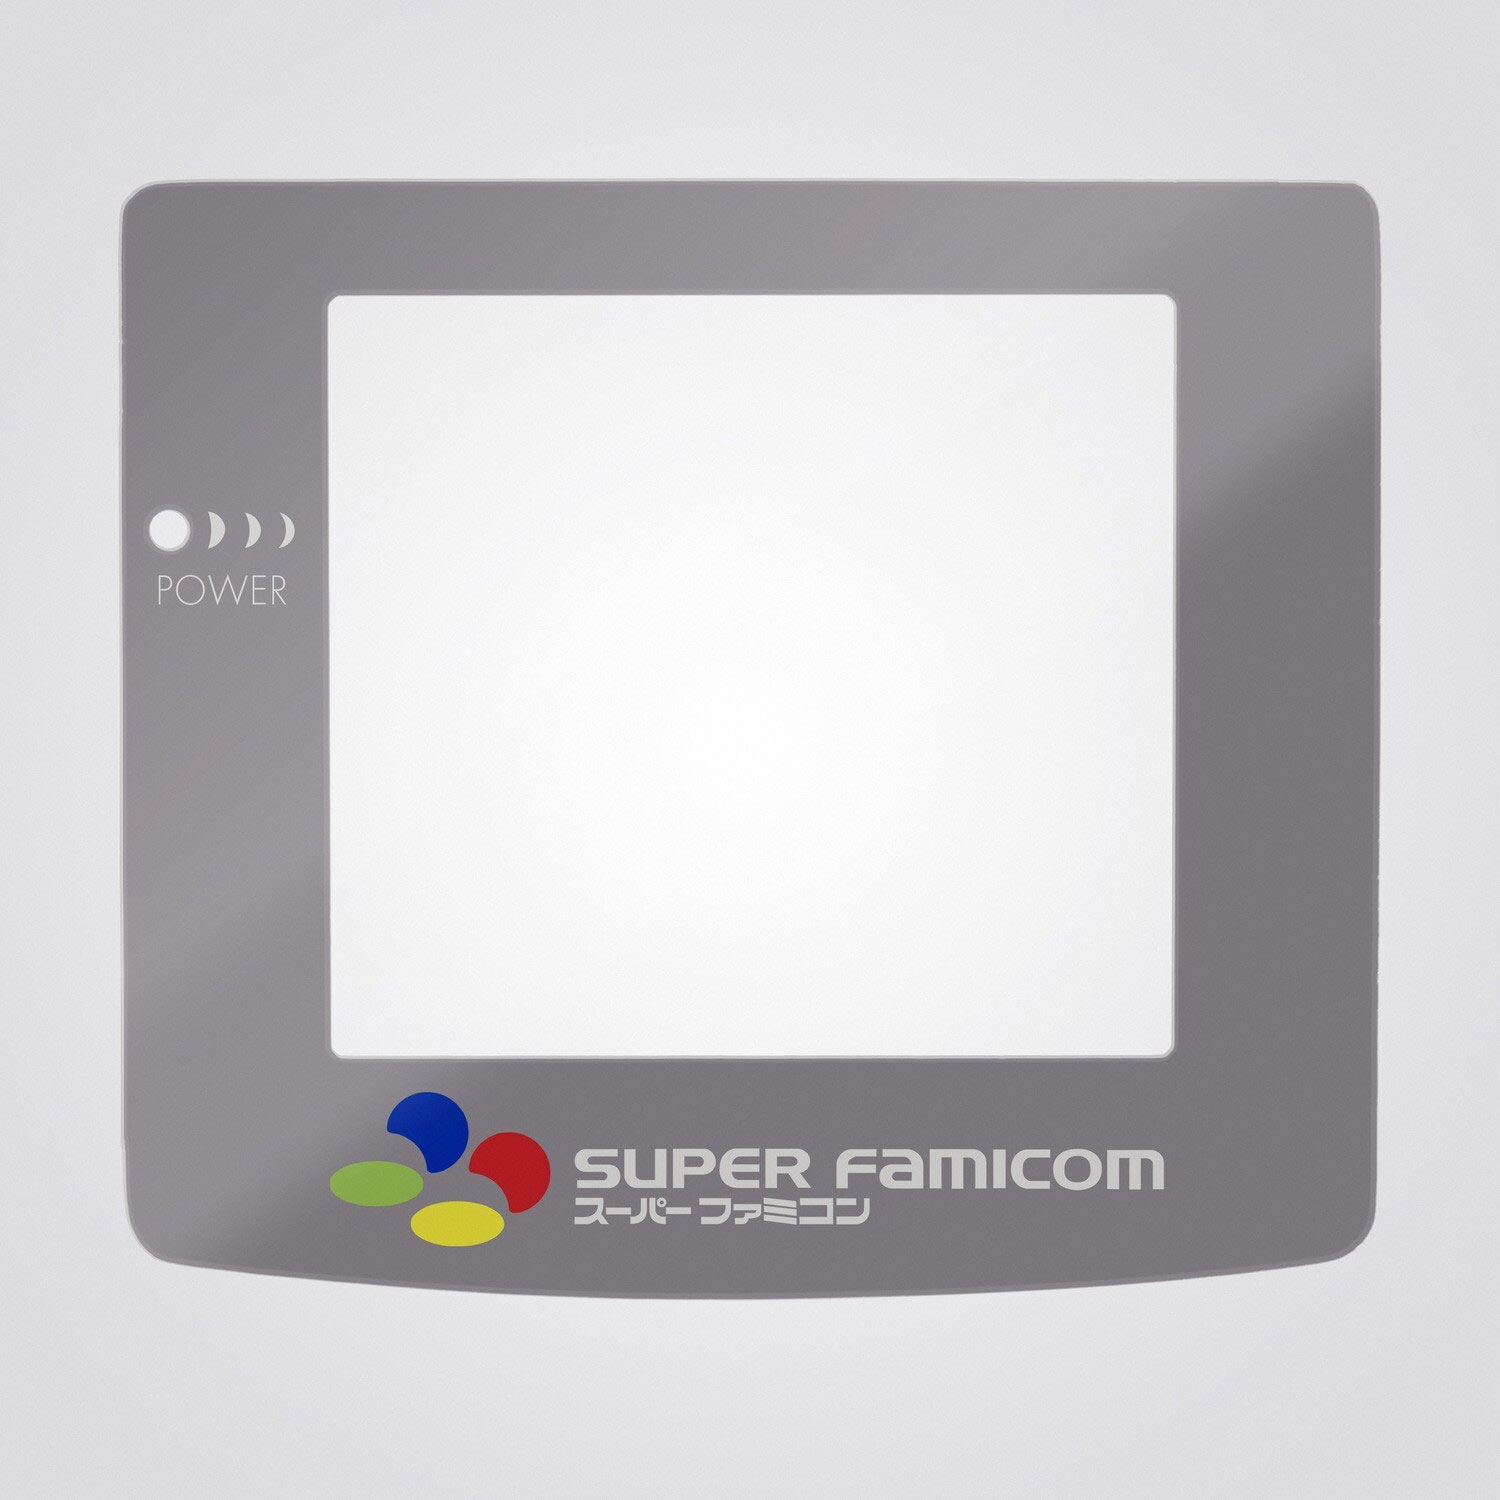 Glas Scheibe (Super Famicom) für Game Boy Color